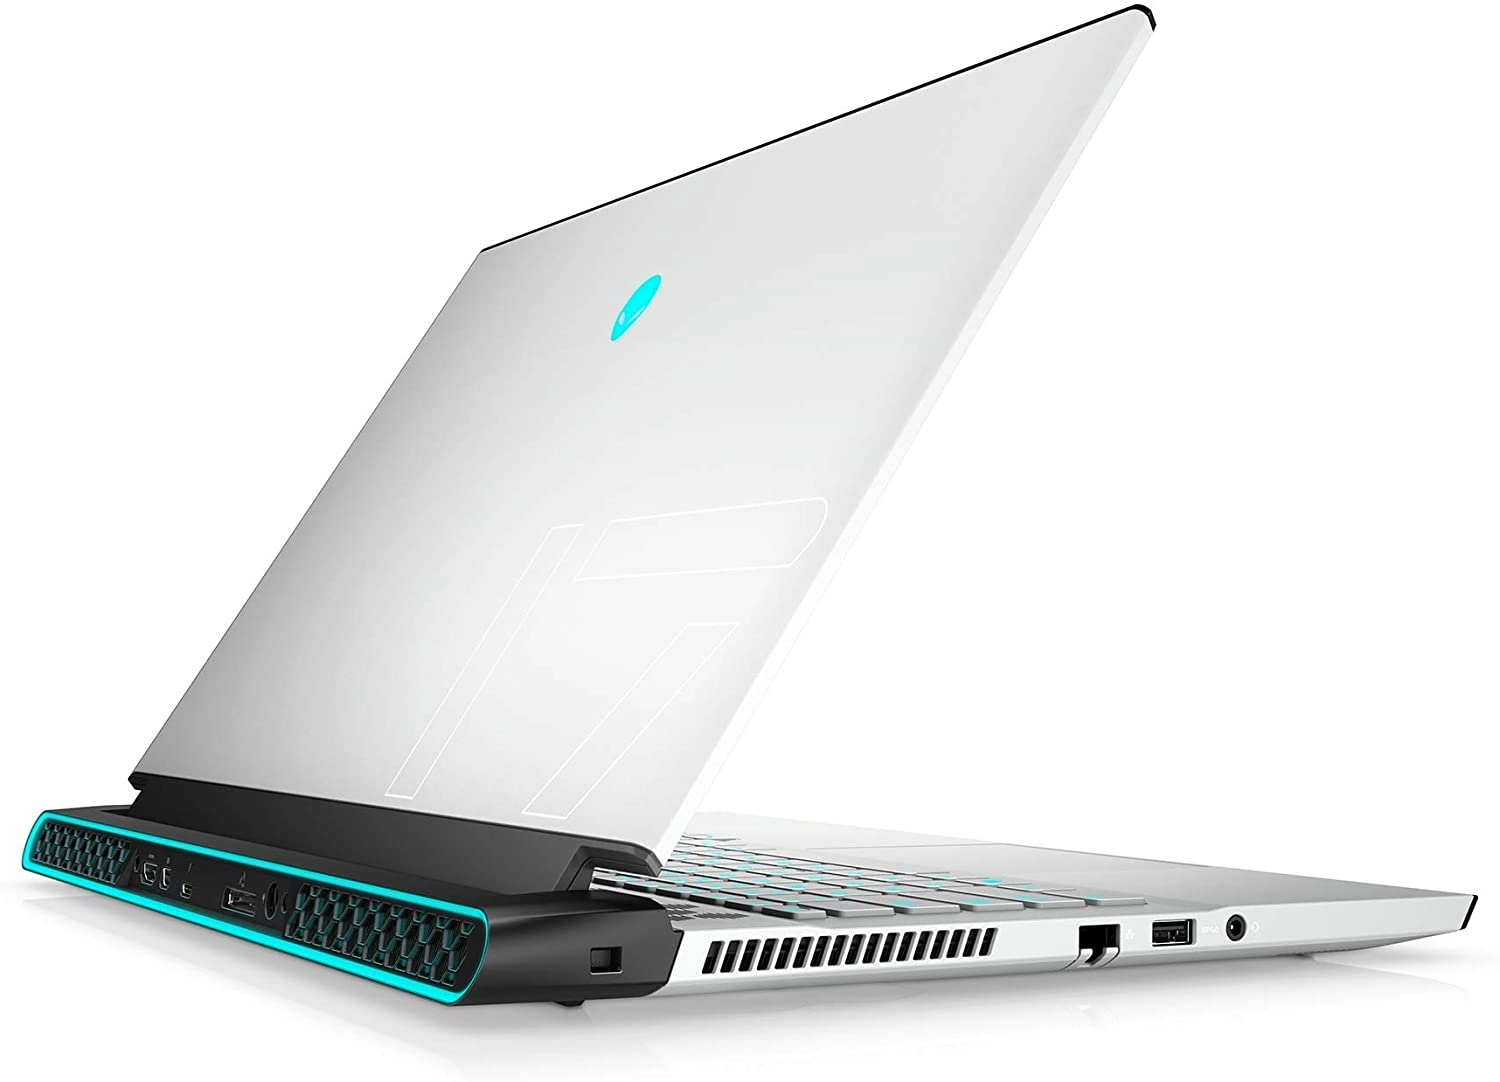 Alienware m17 R4 laptop image